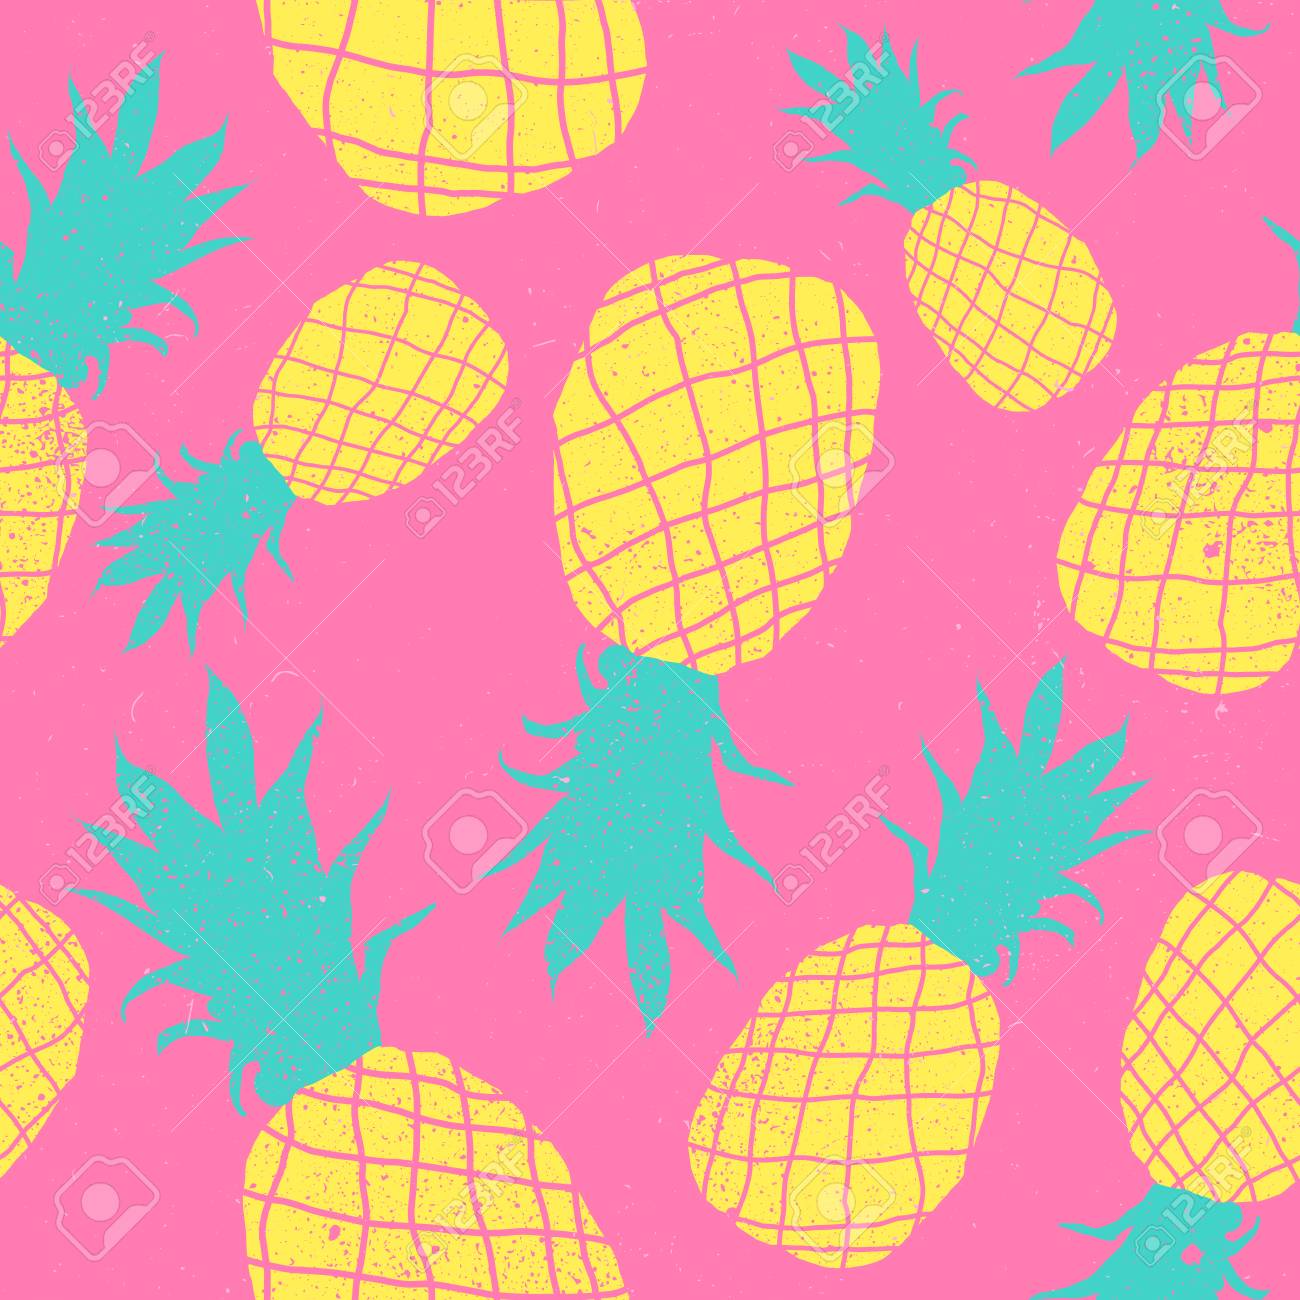 fruit wallpaper patterns